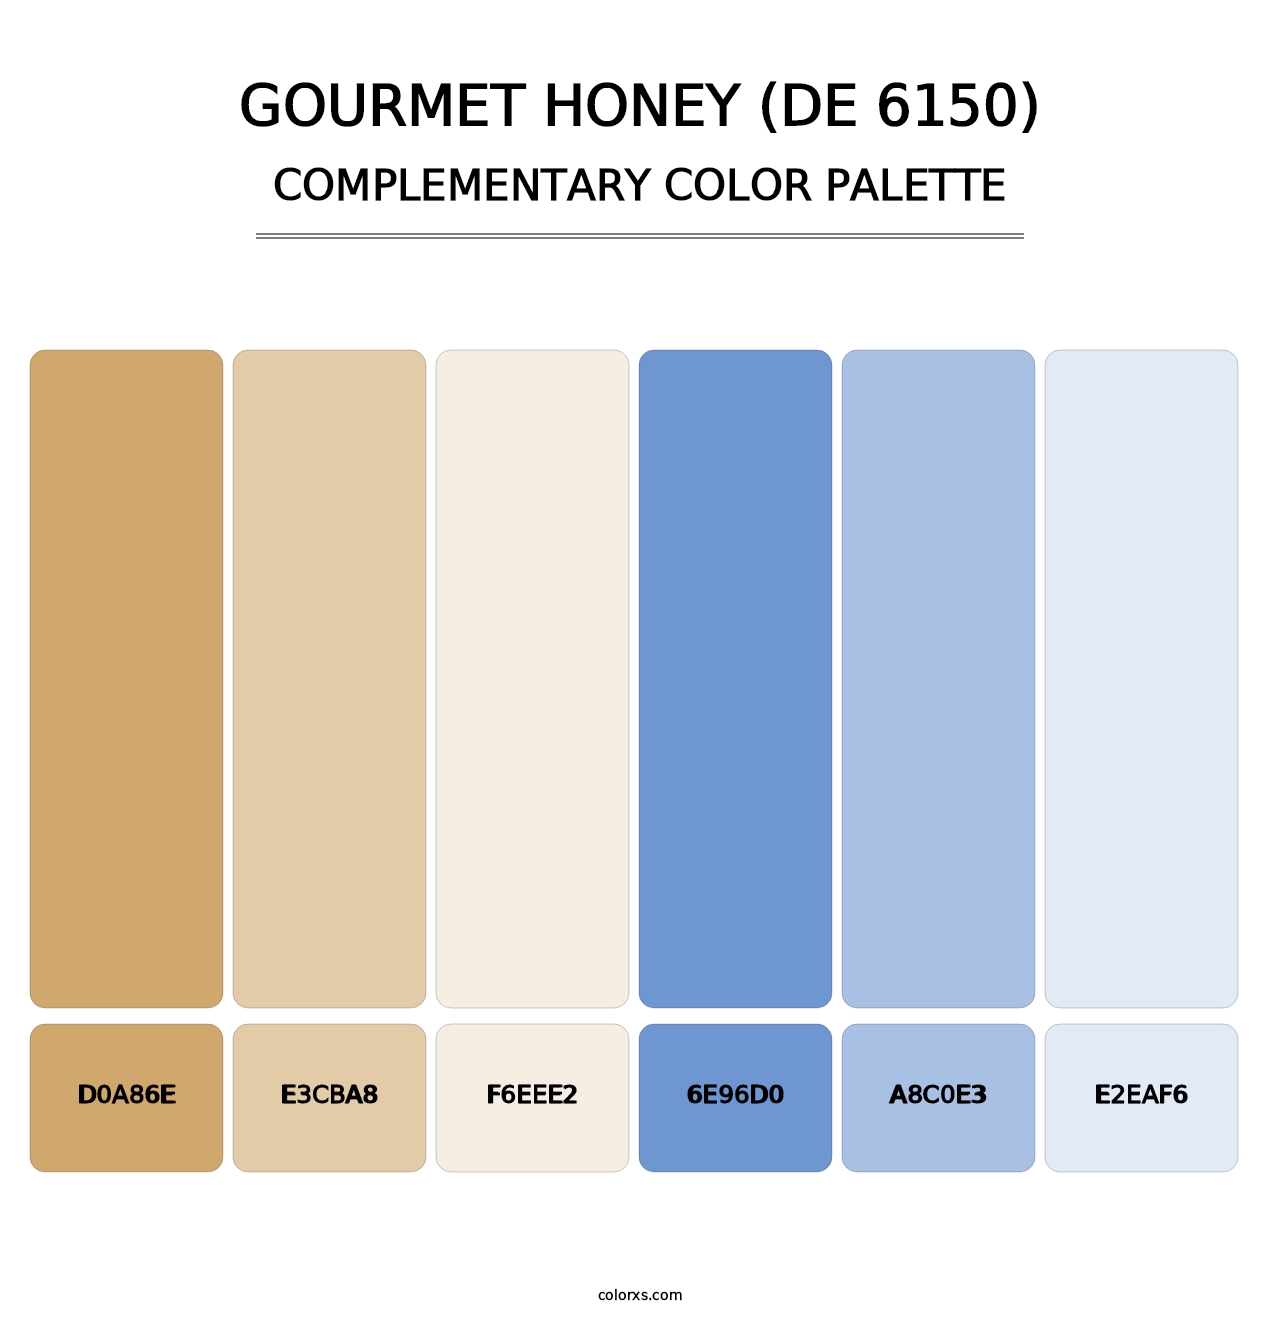 Gourmet Honey (DE 6150) - Complementary Color Palette